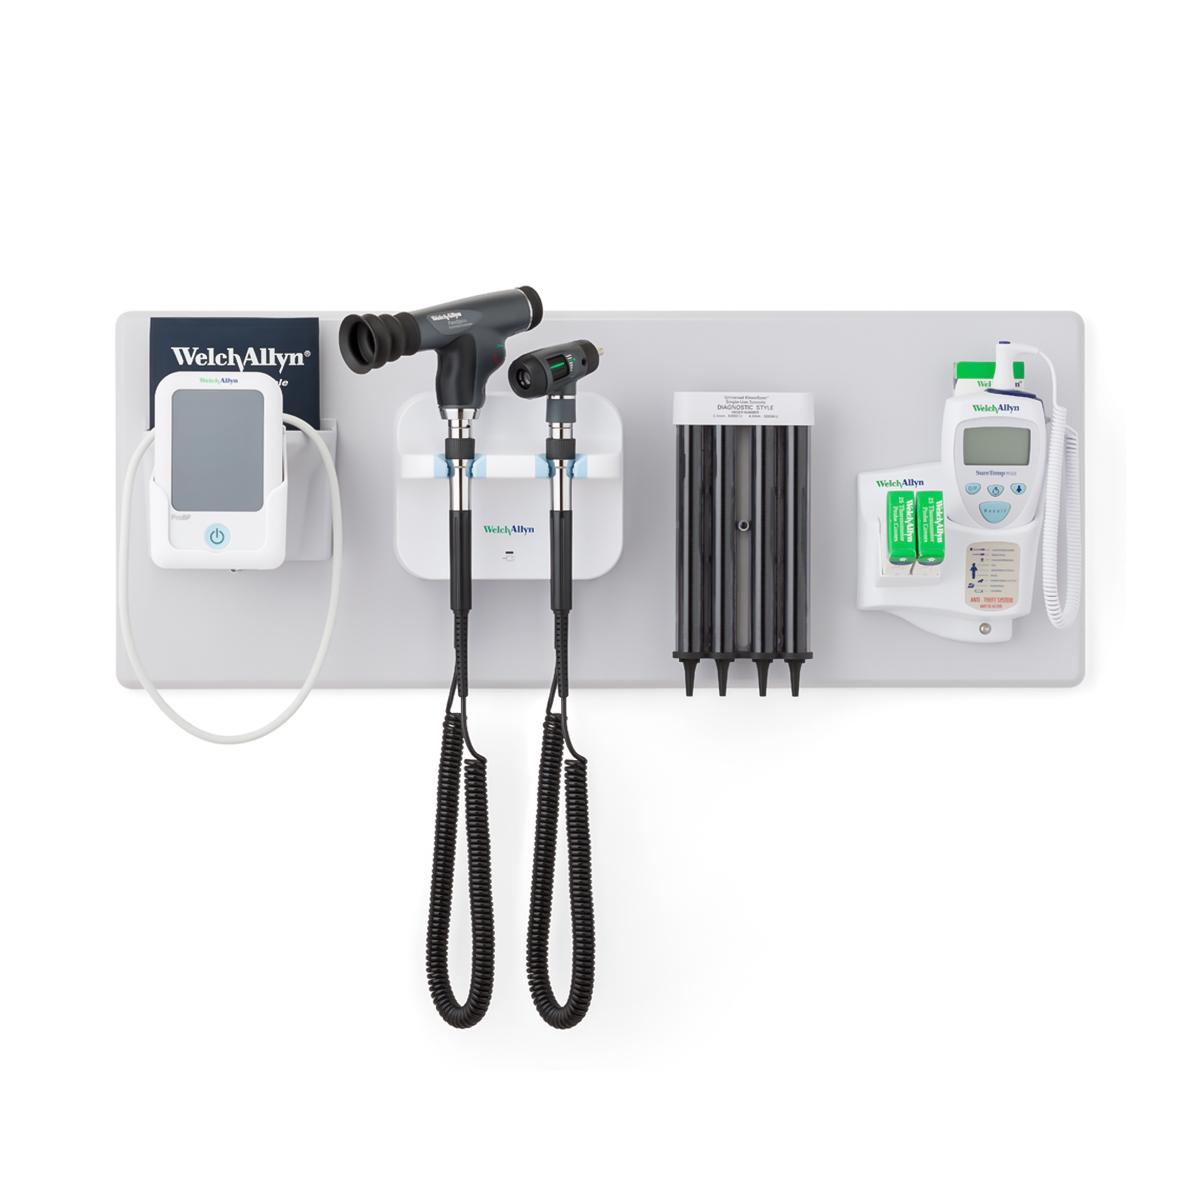 他の Welch Allyn 身体検査製品とともに統合型ウォールシステムに取り付けられた ProBP 2000 デジタル血圧計